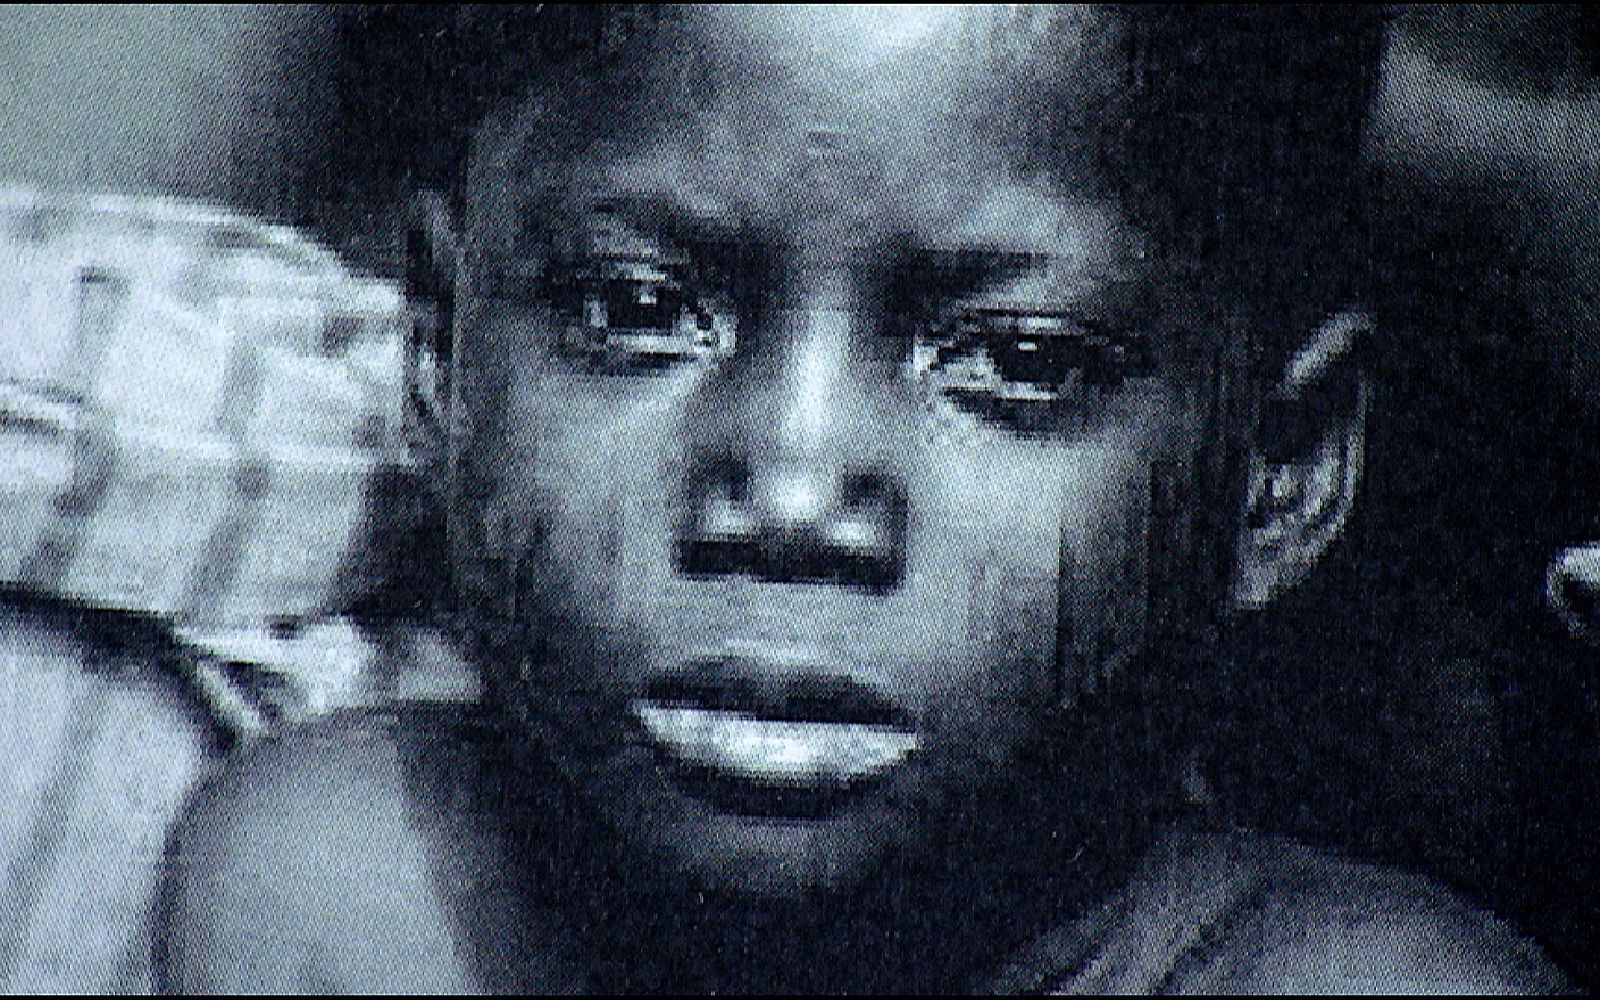 Documentos tv - MGF, atrocidad sin fronteras - Avance